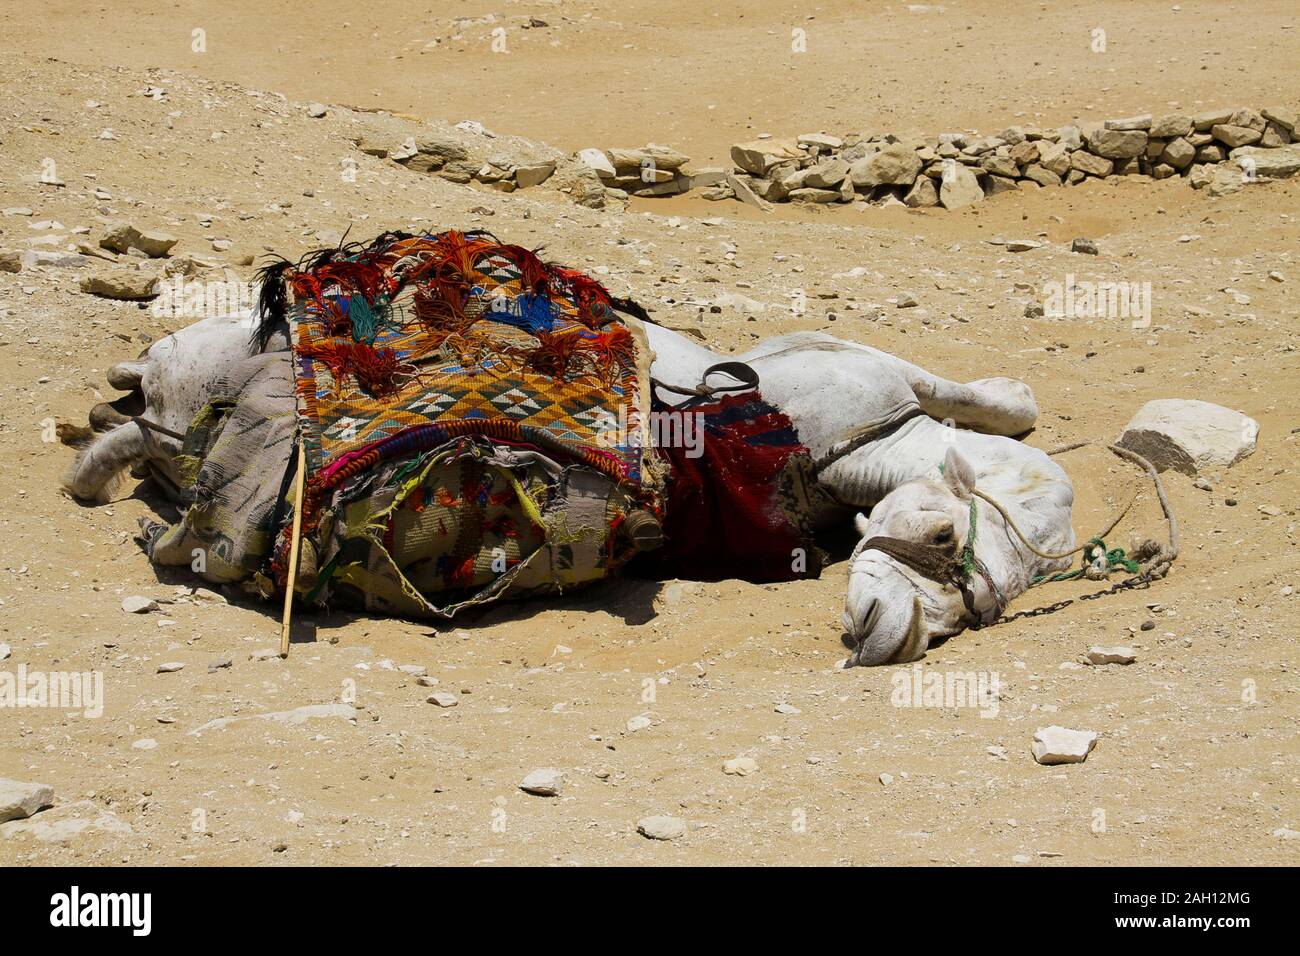 Ägypten, Saqqara Nekropole, ein Kamel schläft auf dem Sand, von einem sehr heissen Sommer. Lustige Ausdruck des Tieres, verdrehen den Hals, um zu sehen, was passiert Stockfoto